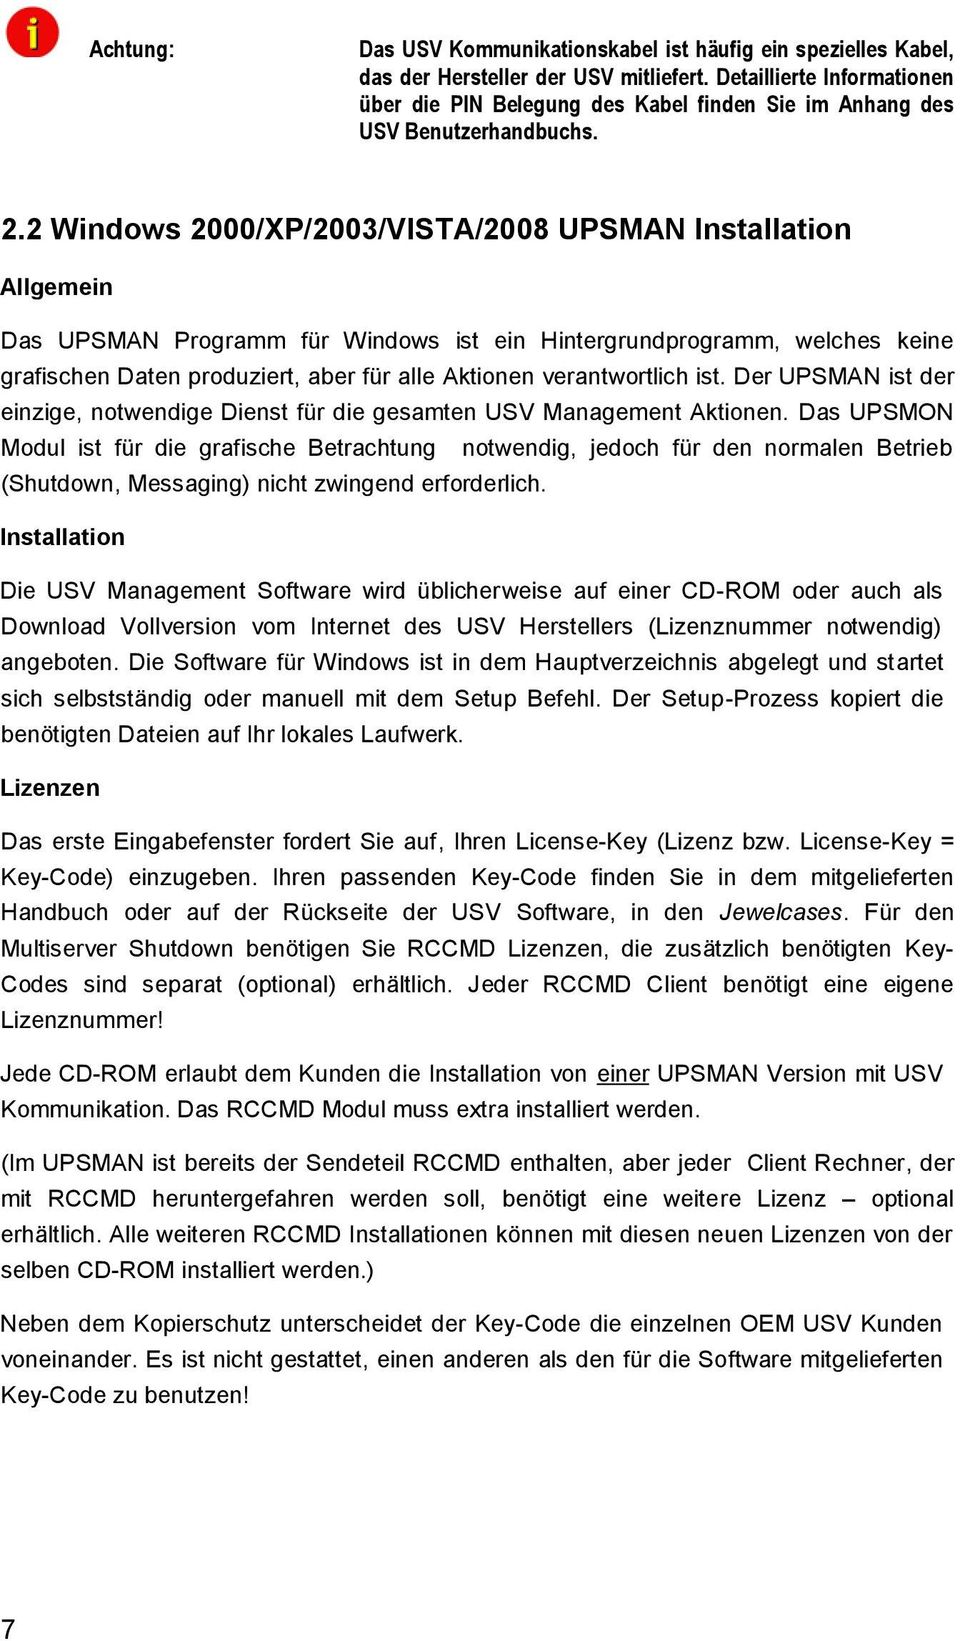 2 Windows 2000/XP/2003/VISTA/2008 UPSMAN Installation Allgemein Das UPSMAN Programm für Windows ist ein Hintergrundprogramm, welches keine grafischen Daten produziert, aber für alle Aktionen